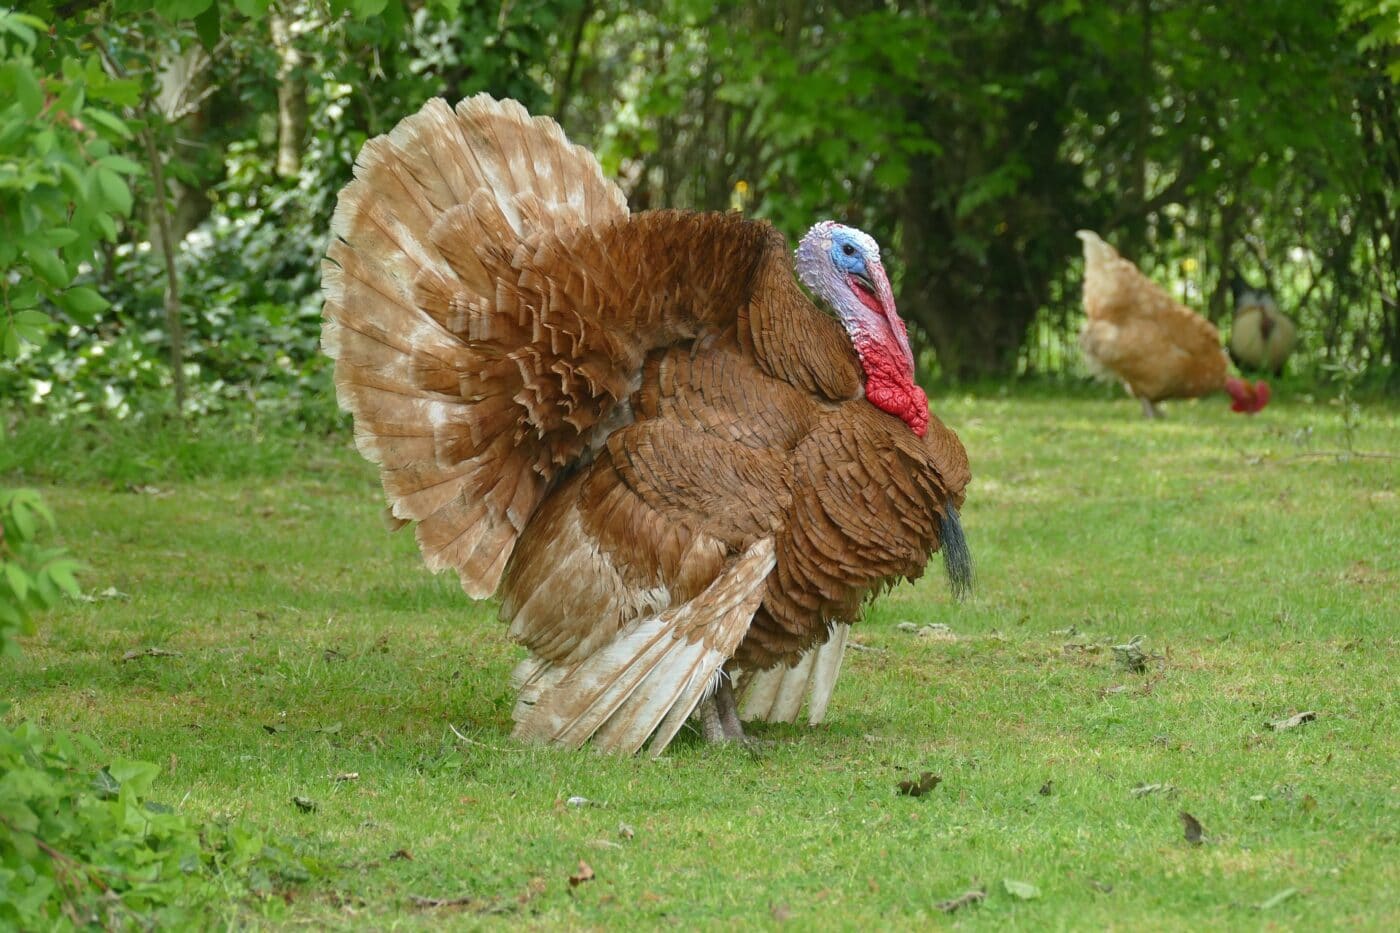 Turkey in grassy field